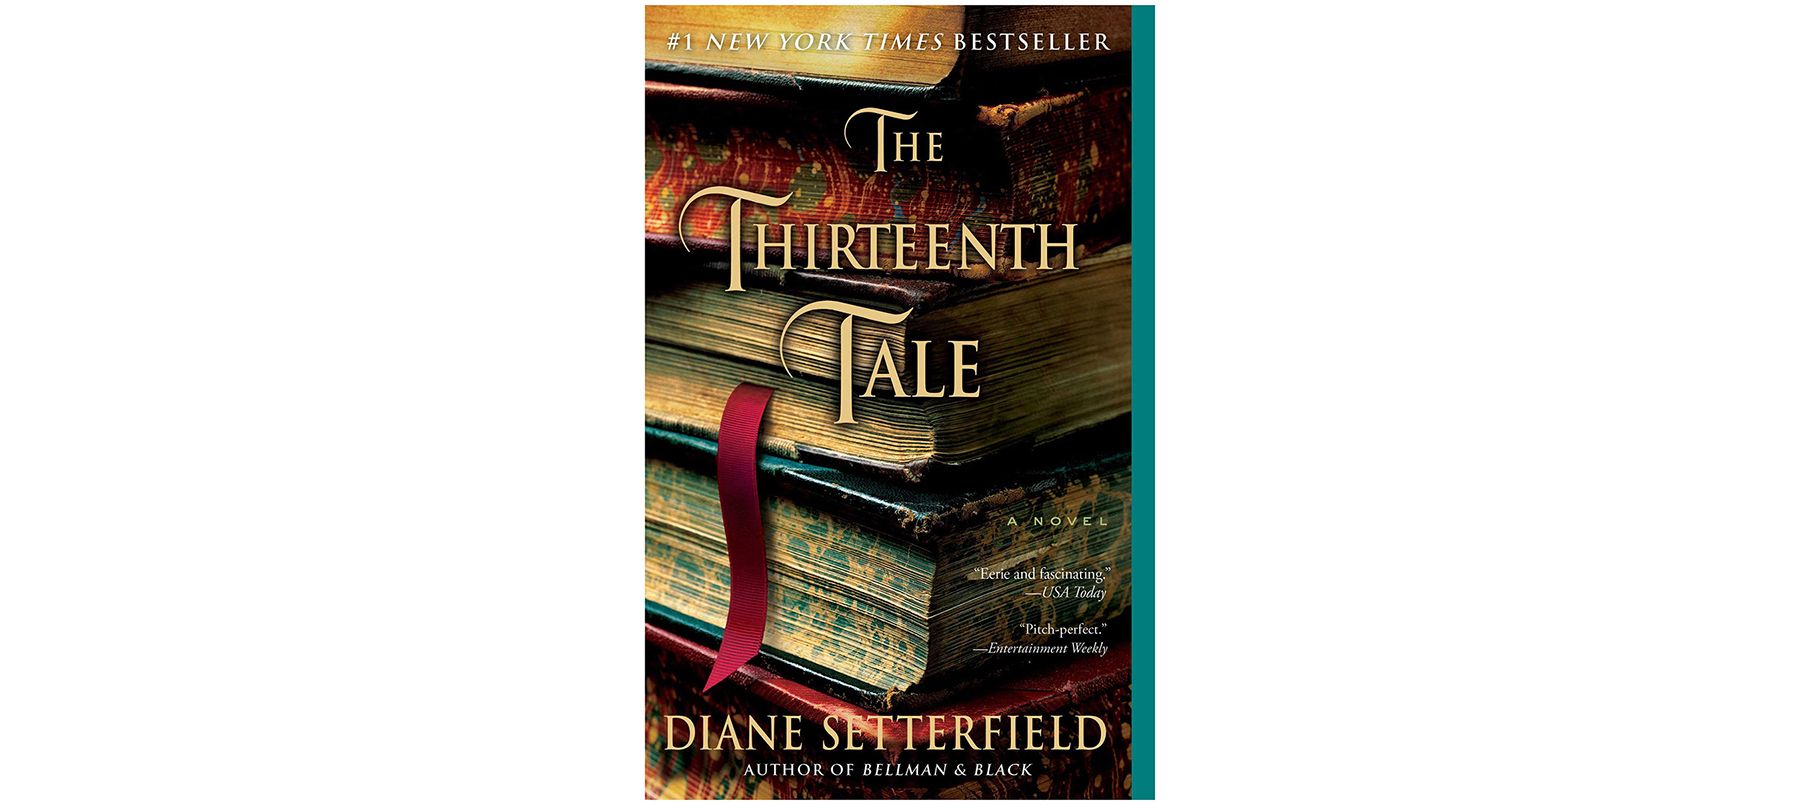 Diane Setterfield'ın The Thirteenth Tale kitabının kapağı